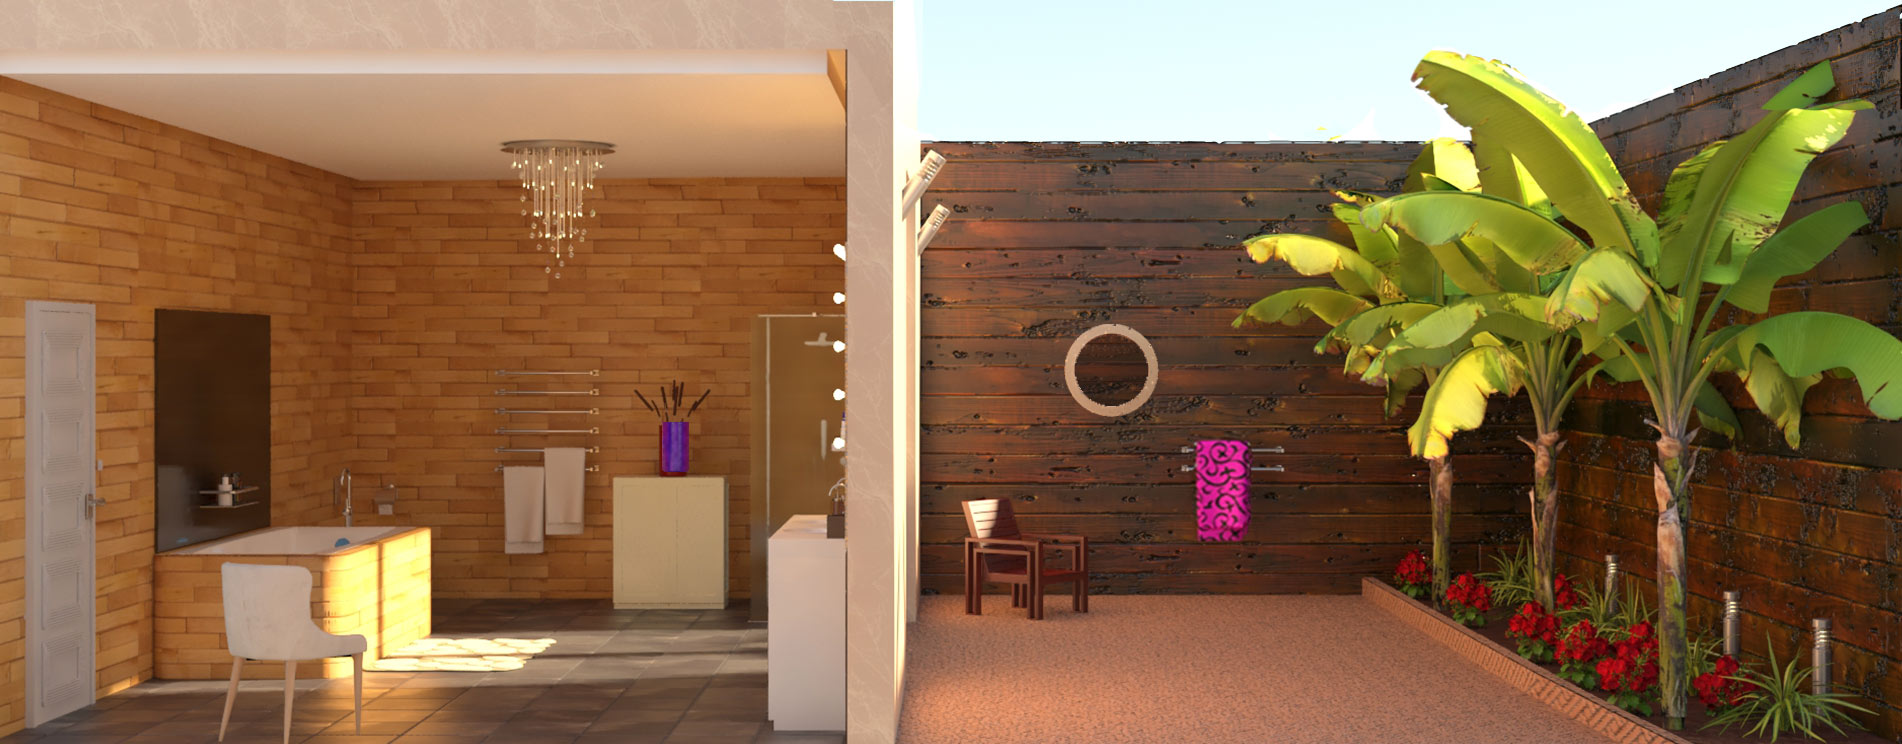 Décoratrice d'intérieur, création, aménagement et décoration d'une salle de bain avec terrasse fermée en 3d